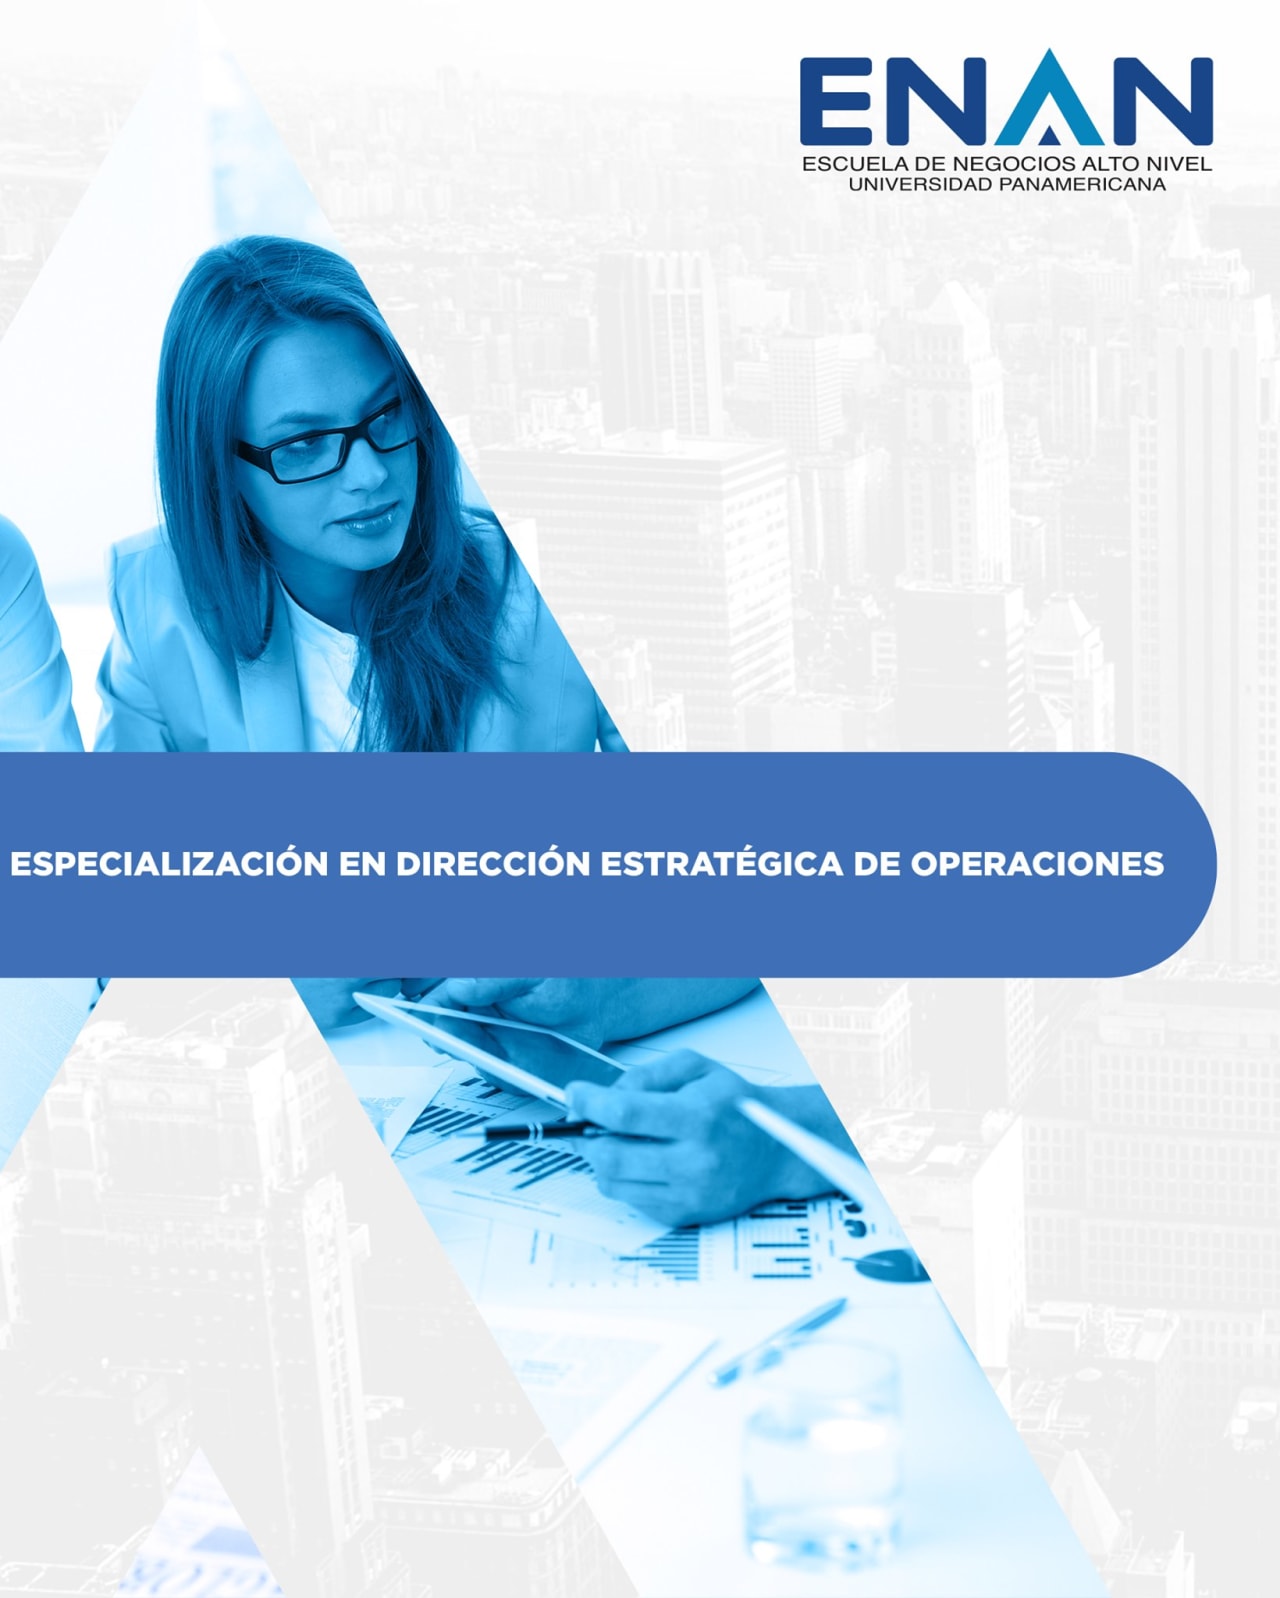 Escuela de Negocios Alto Nivel - Universidad Panamericana de Guatemala Specjalizacja w zarządzaniu operacjami strategicznymi